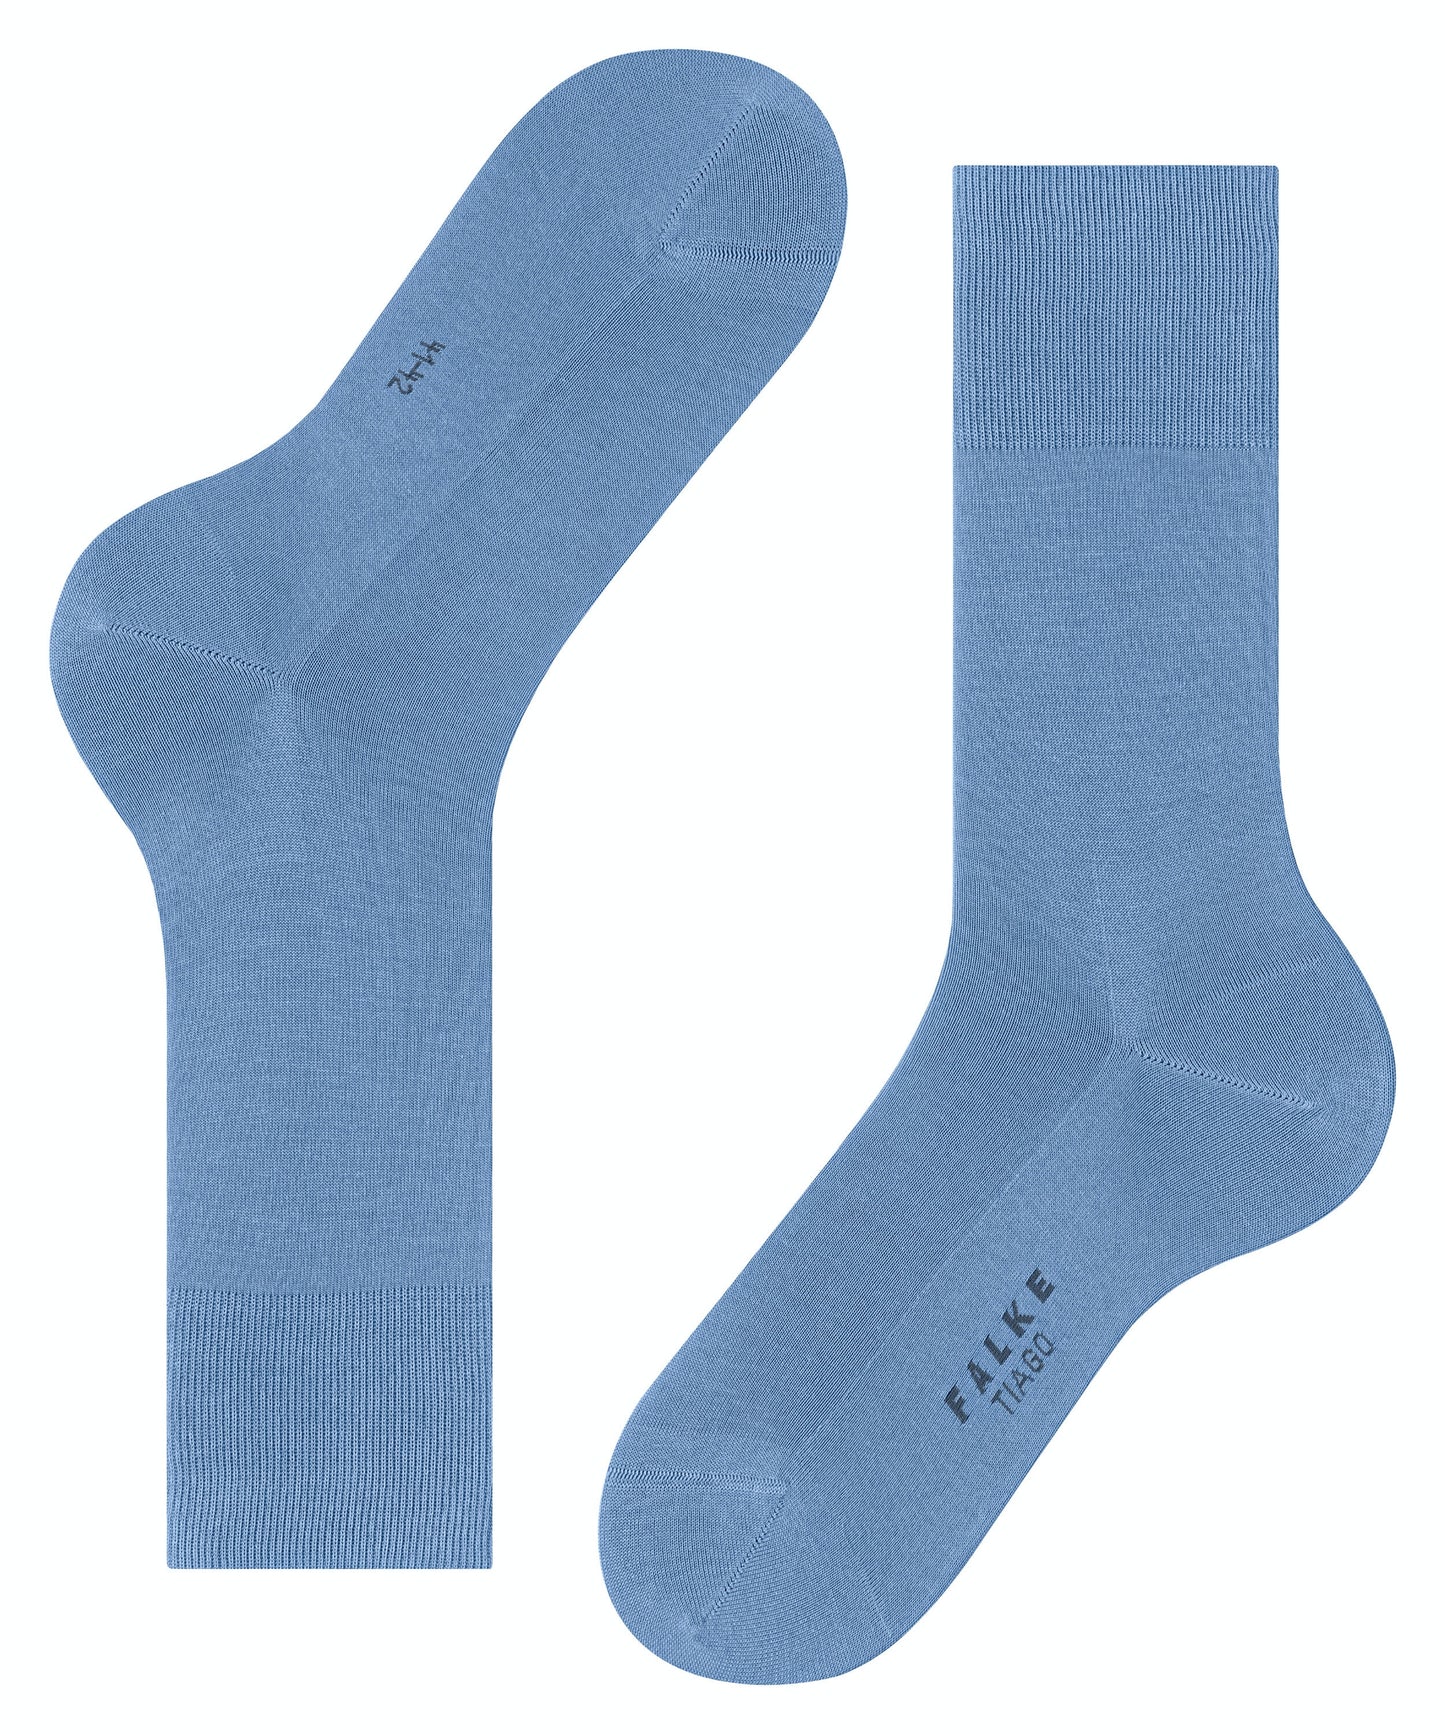 FALKE TIAGO Socks in Cornflower Blue 14662